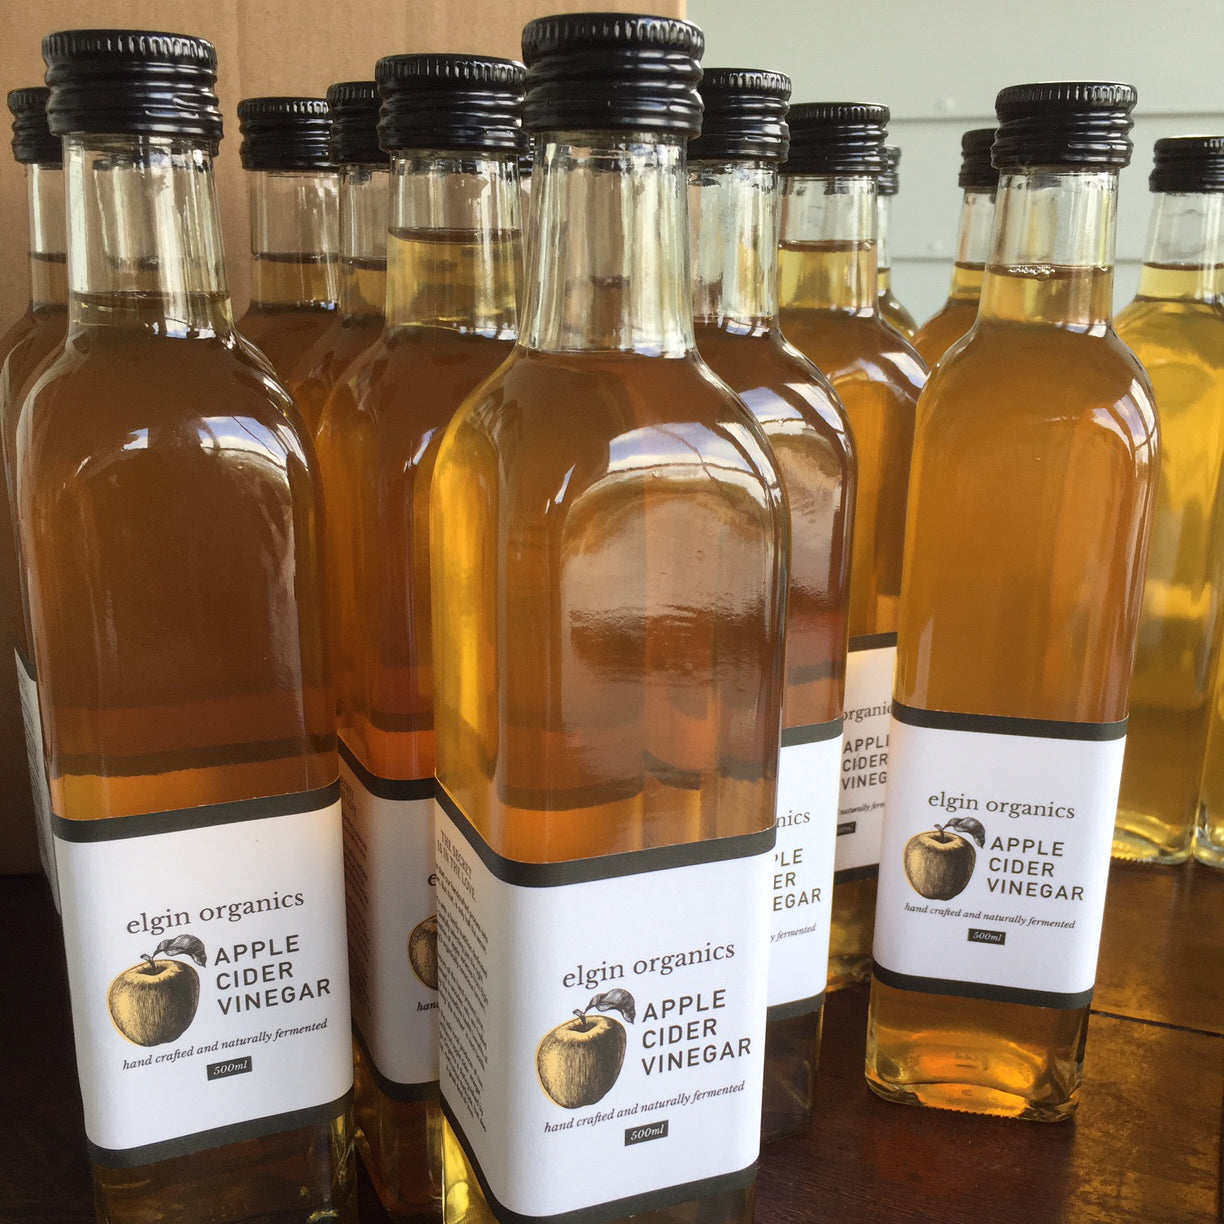 Apple Cider Vinegar (500ml)